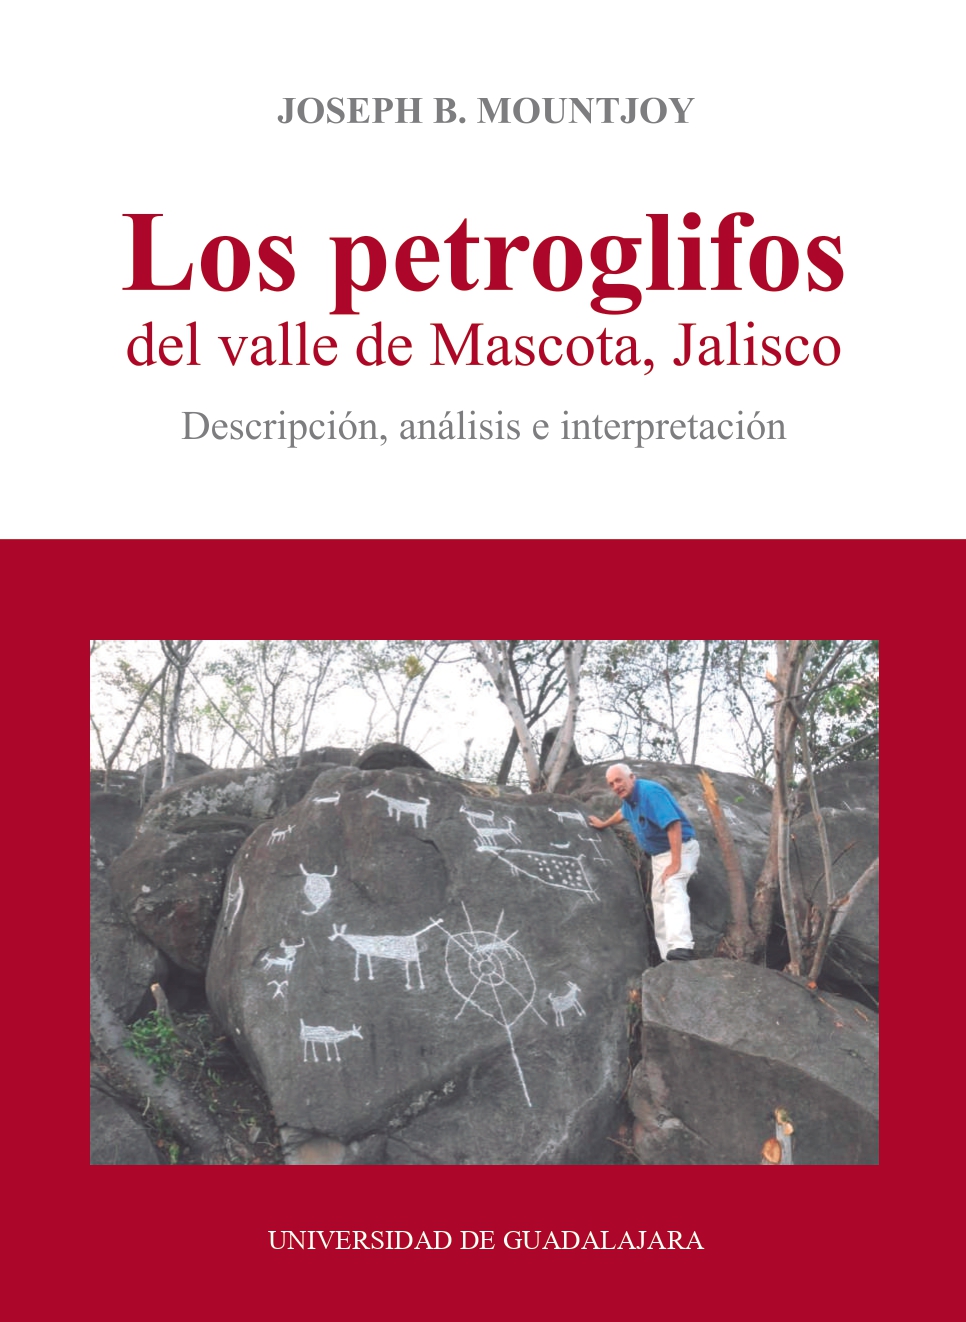 Los petroglifos del valle de Mascota, Jalisco. Análisis, descripción e interpretación<br />
                                    